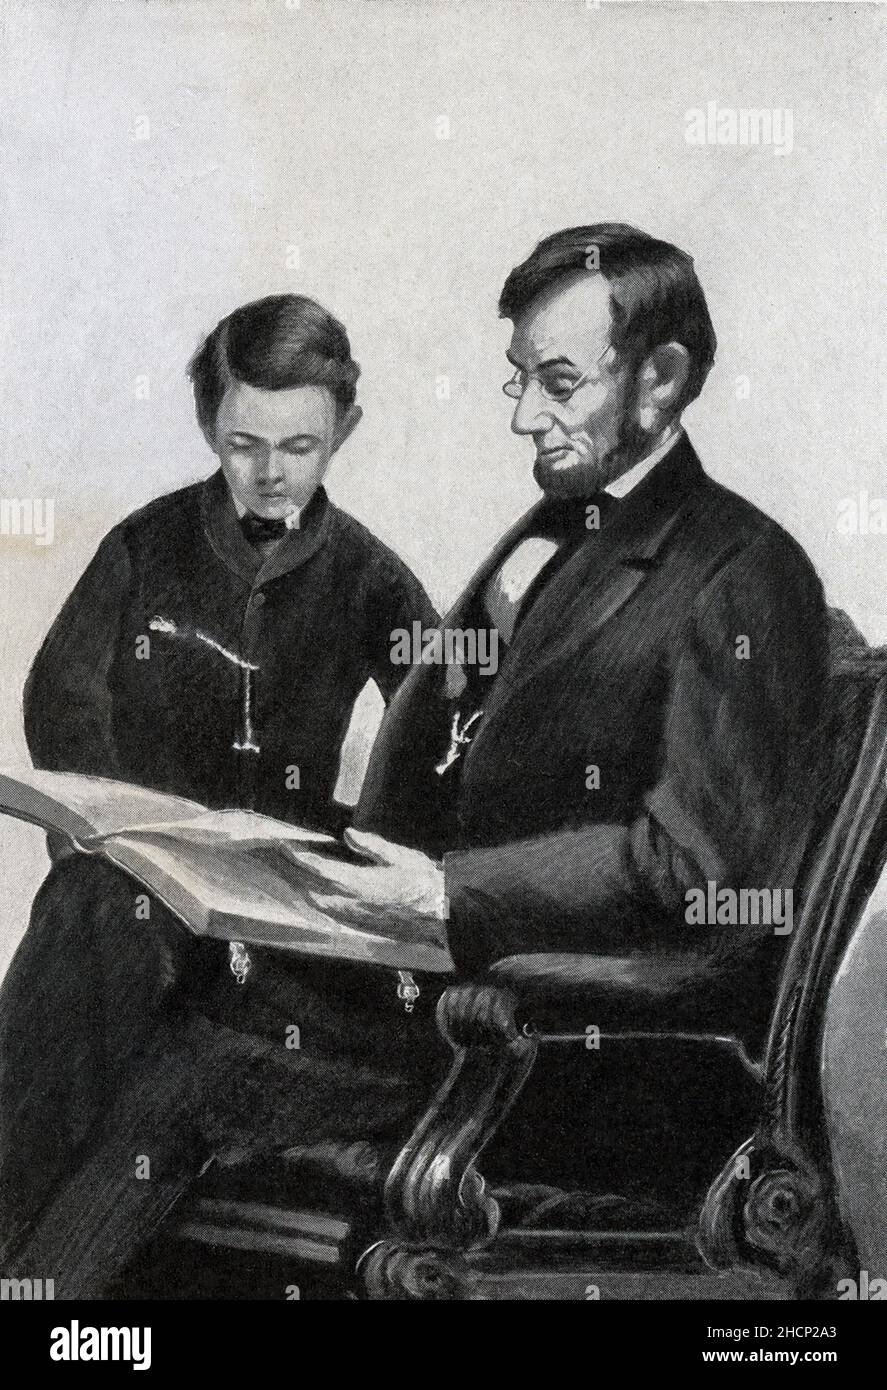 Die Bildunterschrift lautet: 'Lincoln und sein Sohn Thomas, bekannt als TAD - Fron Photograph von Brady.' Abraham Lincoln war der Präsident der Vereinigten Staaten von 16th. Er diente vom 1861. März bis zu seiner Tötung am 15. April 1865. Er wurde 1860 auf der Convention zum republikanischen Kandidaten gewählt. Lincoln war Rechtsanwalt, aber bevor er zur Juraschule ging, hatte er eine Vielzahl von Jobs inne. Stockfoto